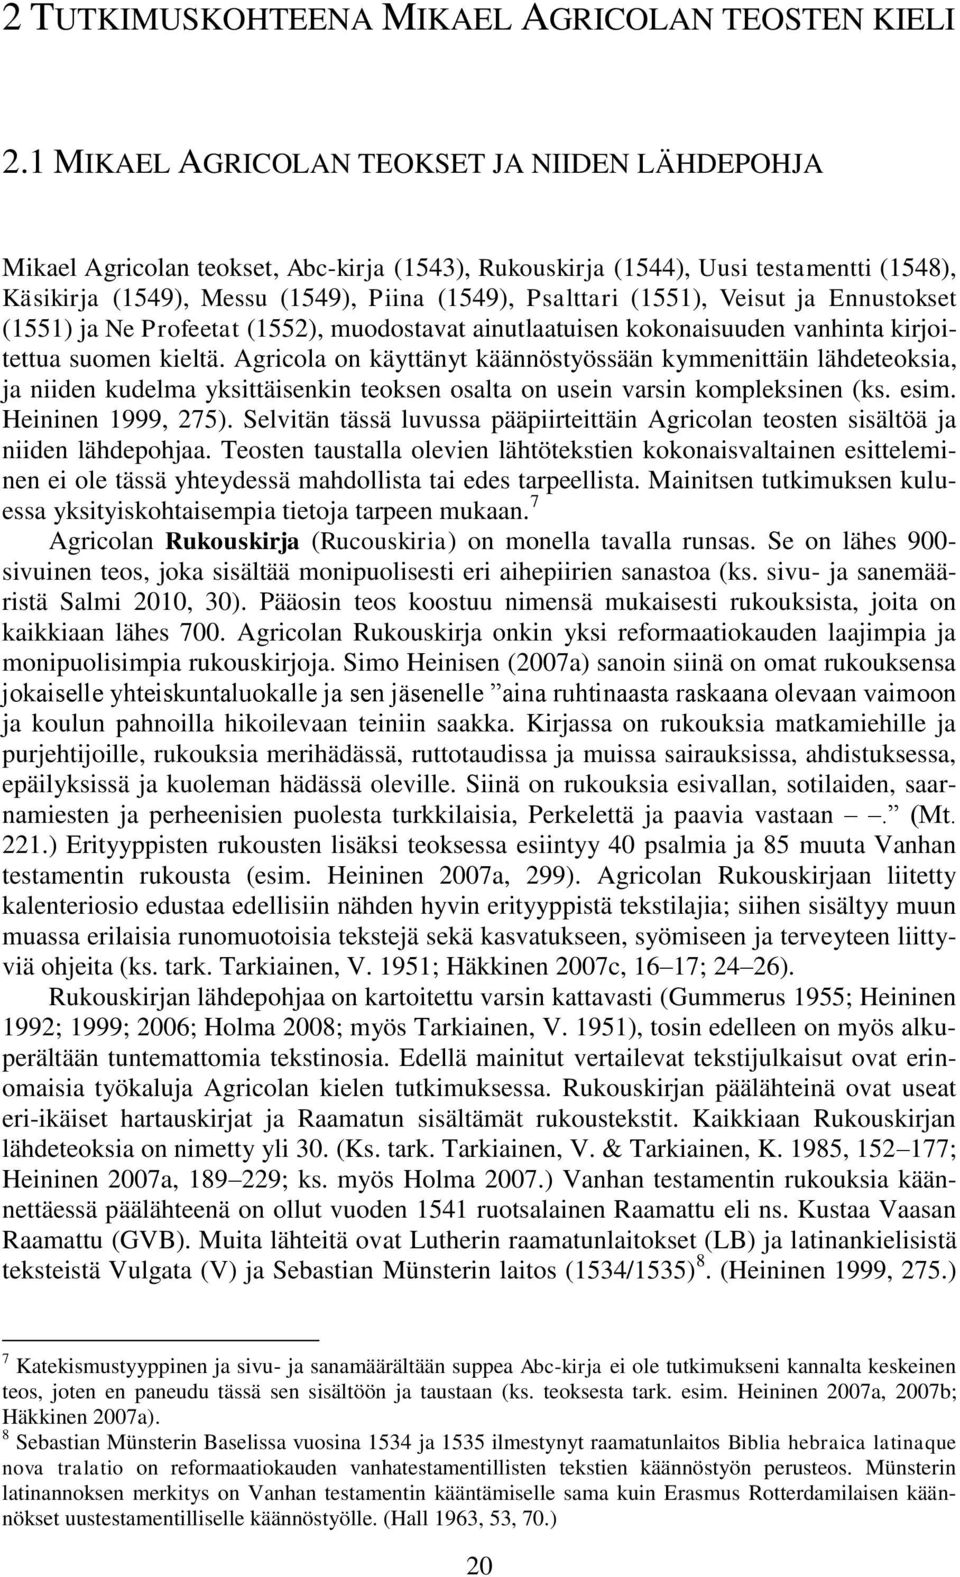 (1551), Veisut ja Ennustokset (1551) ja Ne Profeetat (1552), muodostavat ainutlaatuisen kokonaisuuden vanhinta kirjoitettua suomen kieltä.